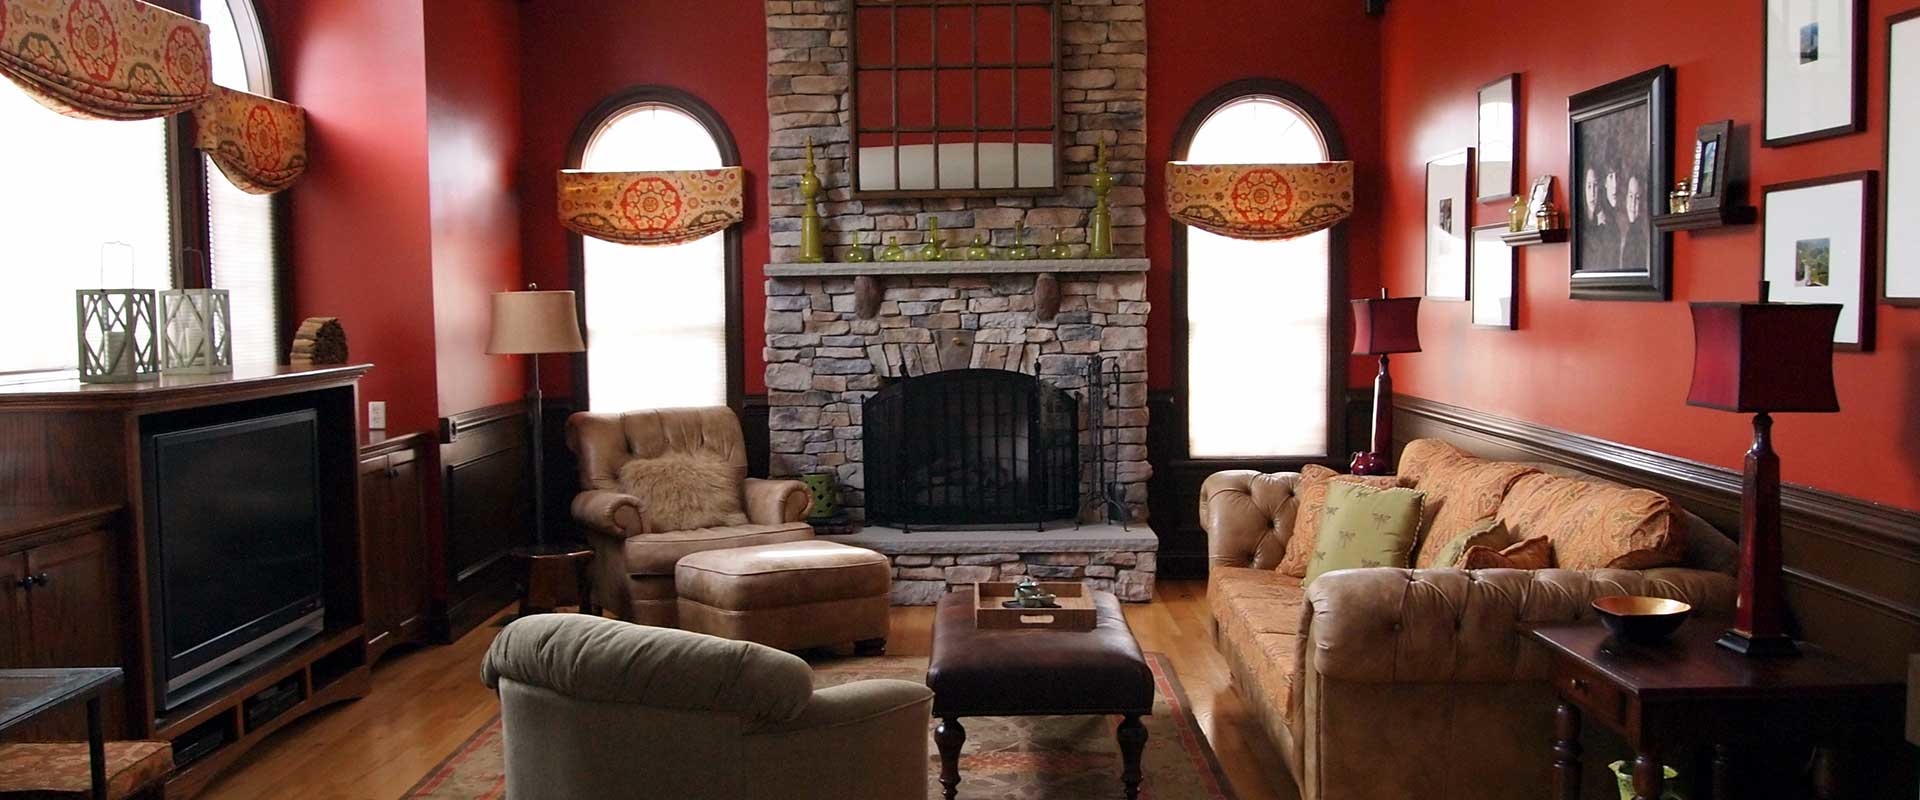 Overhead Door and Fireplace Photo